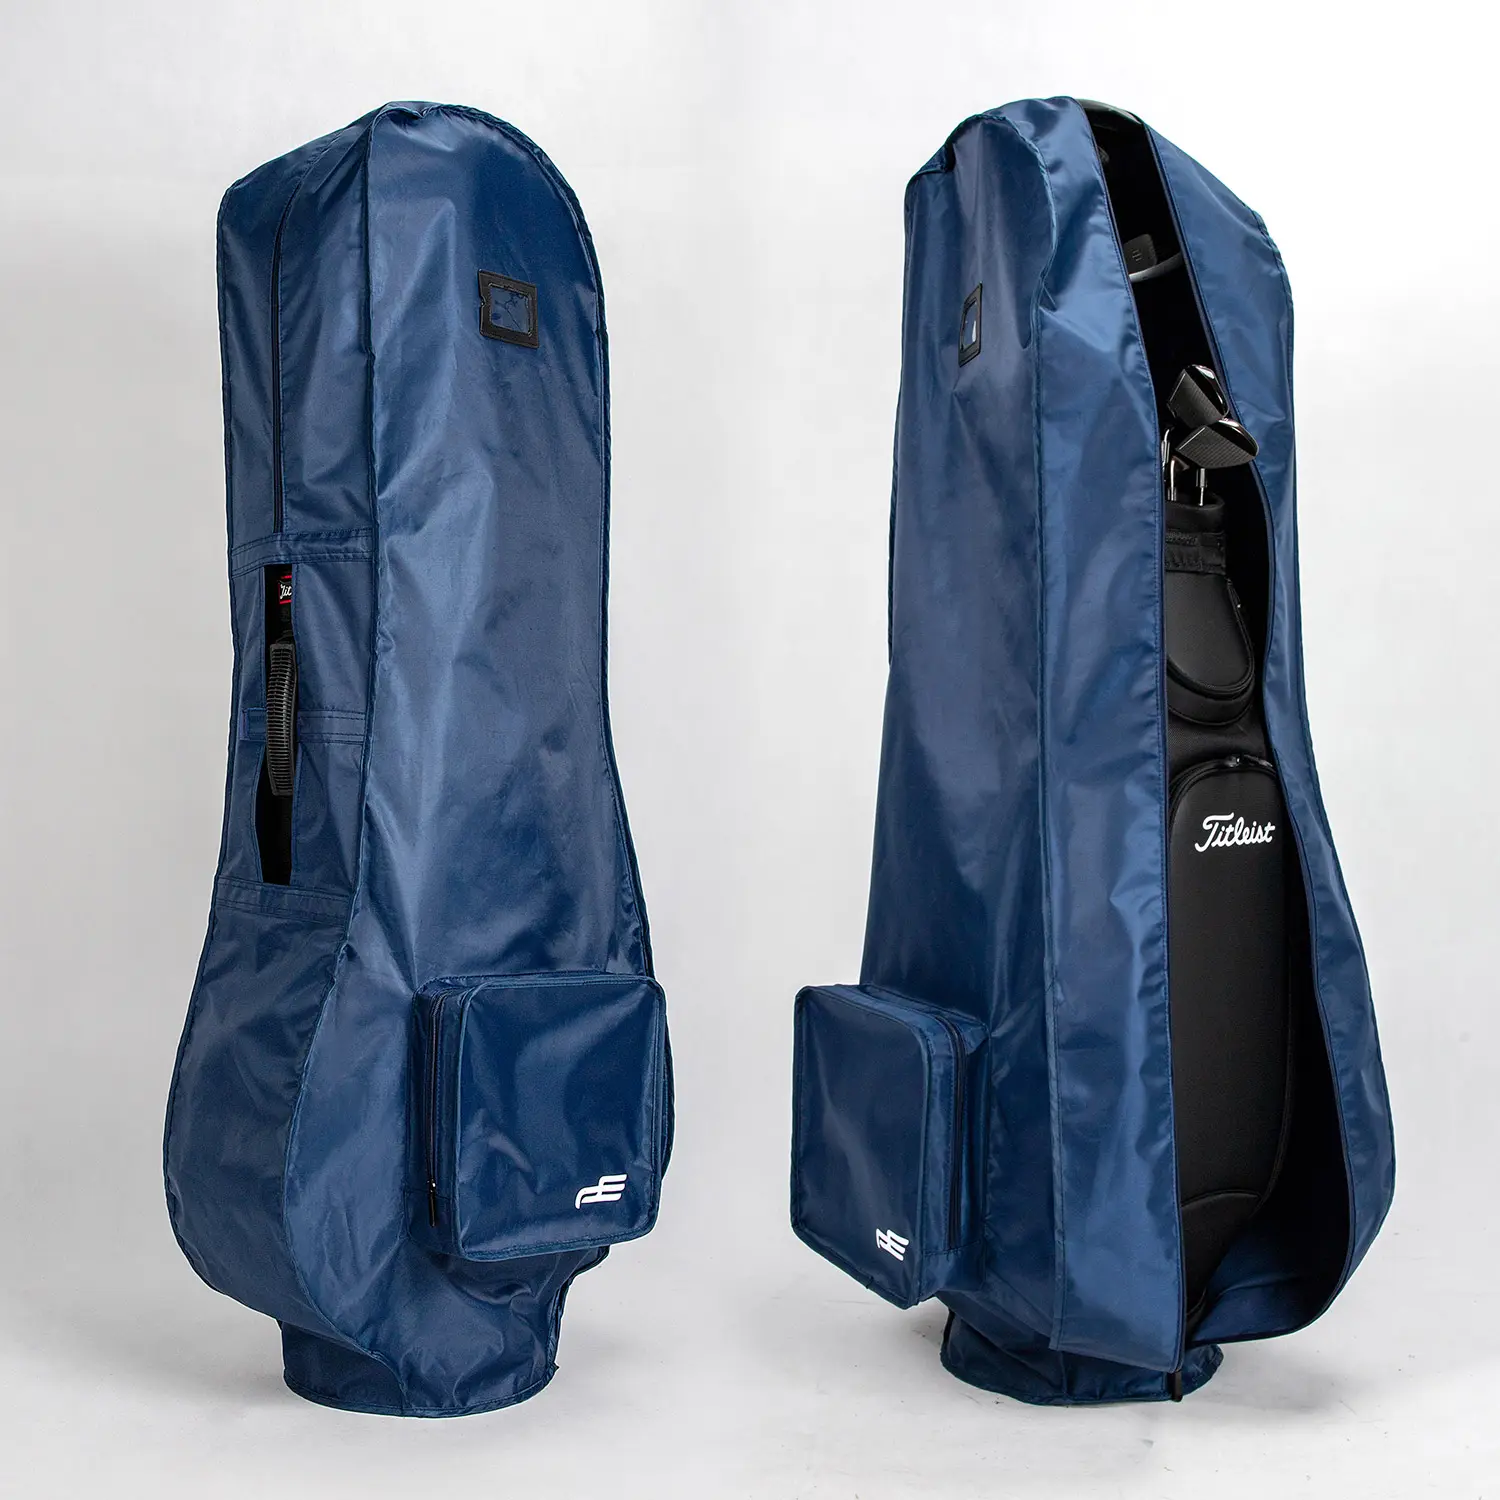 ถุงกอล์ฟ Playeagle ถุงกันฝนกันน้ำถุงผ้ากอล์ฟถุงป้องกันฝุ่นกระเป๋าเดินทางพับได้